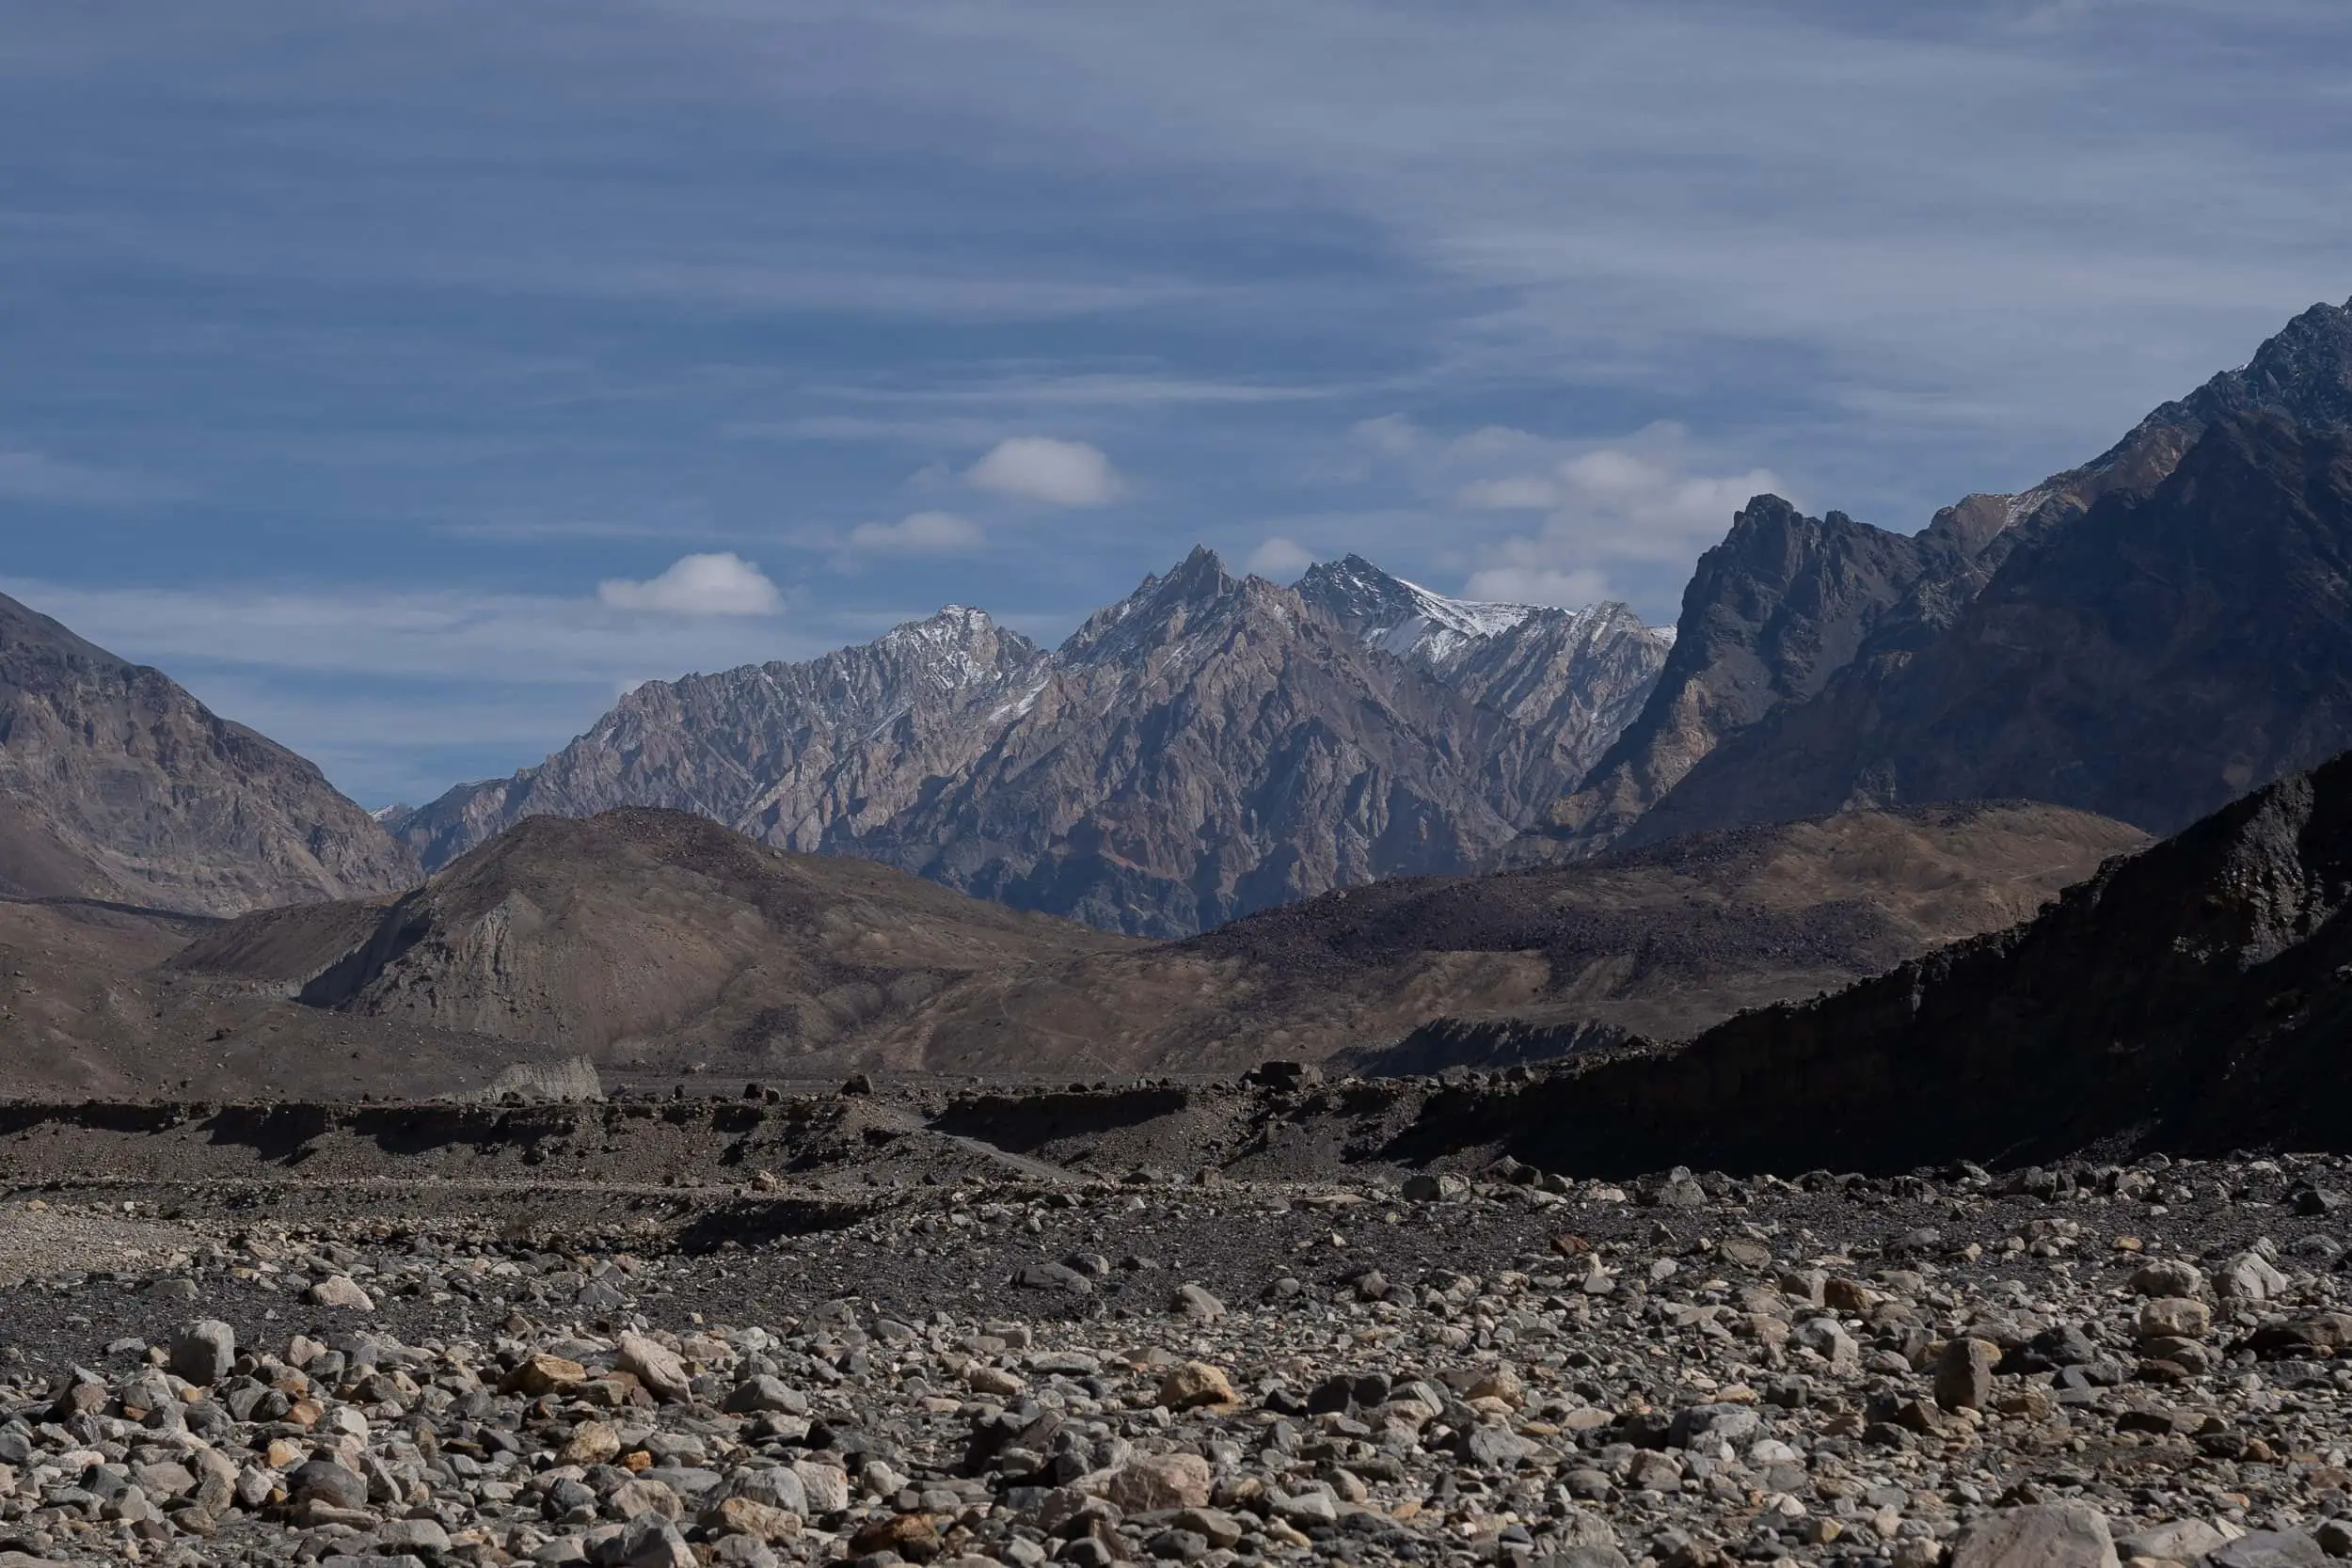 Huge Pamir Mountain range